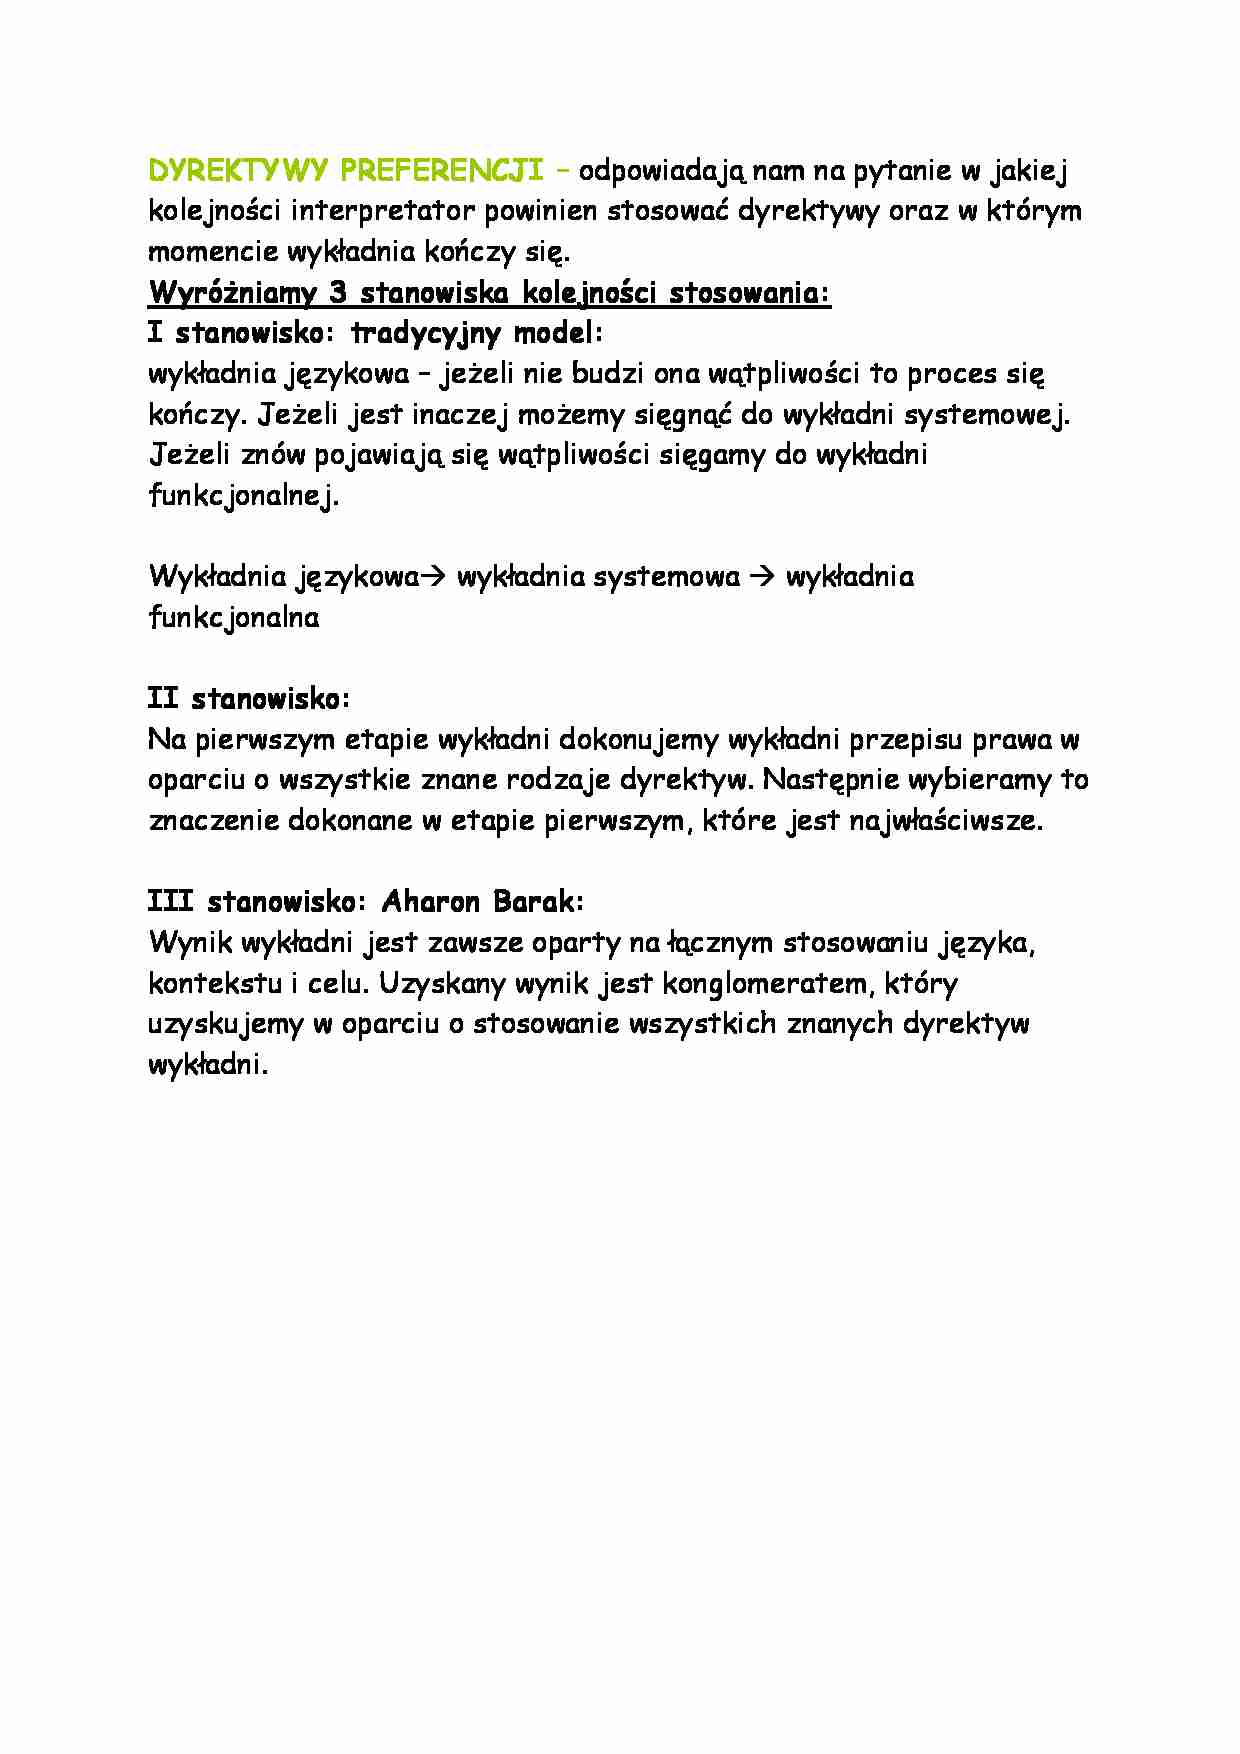 Dyrektywy preferencji-opracowanie - strona 1